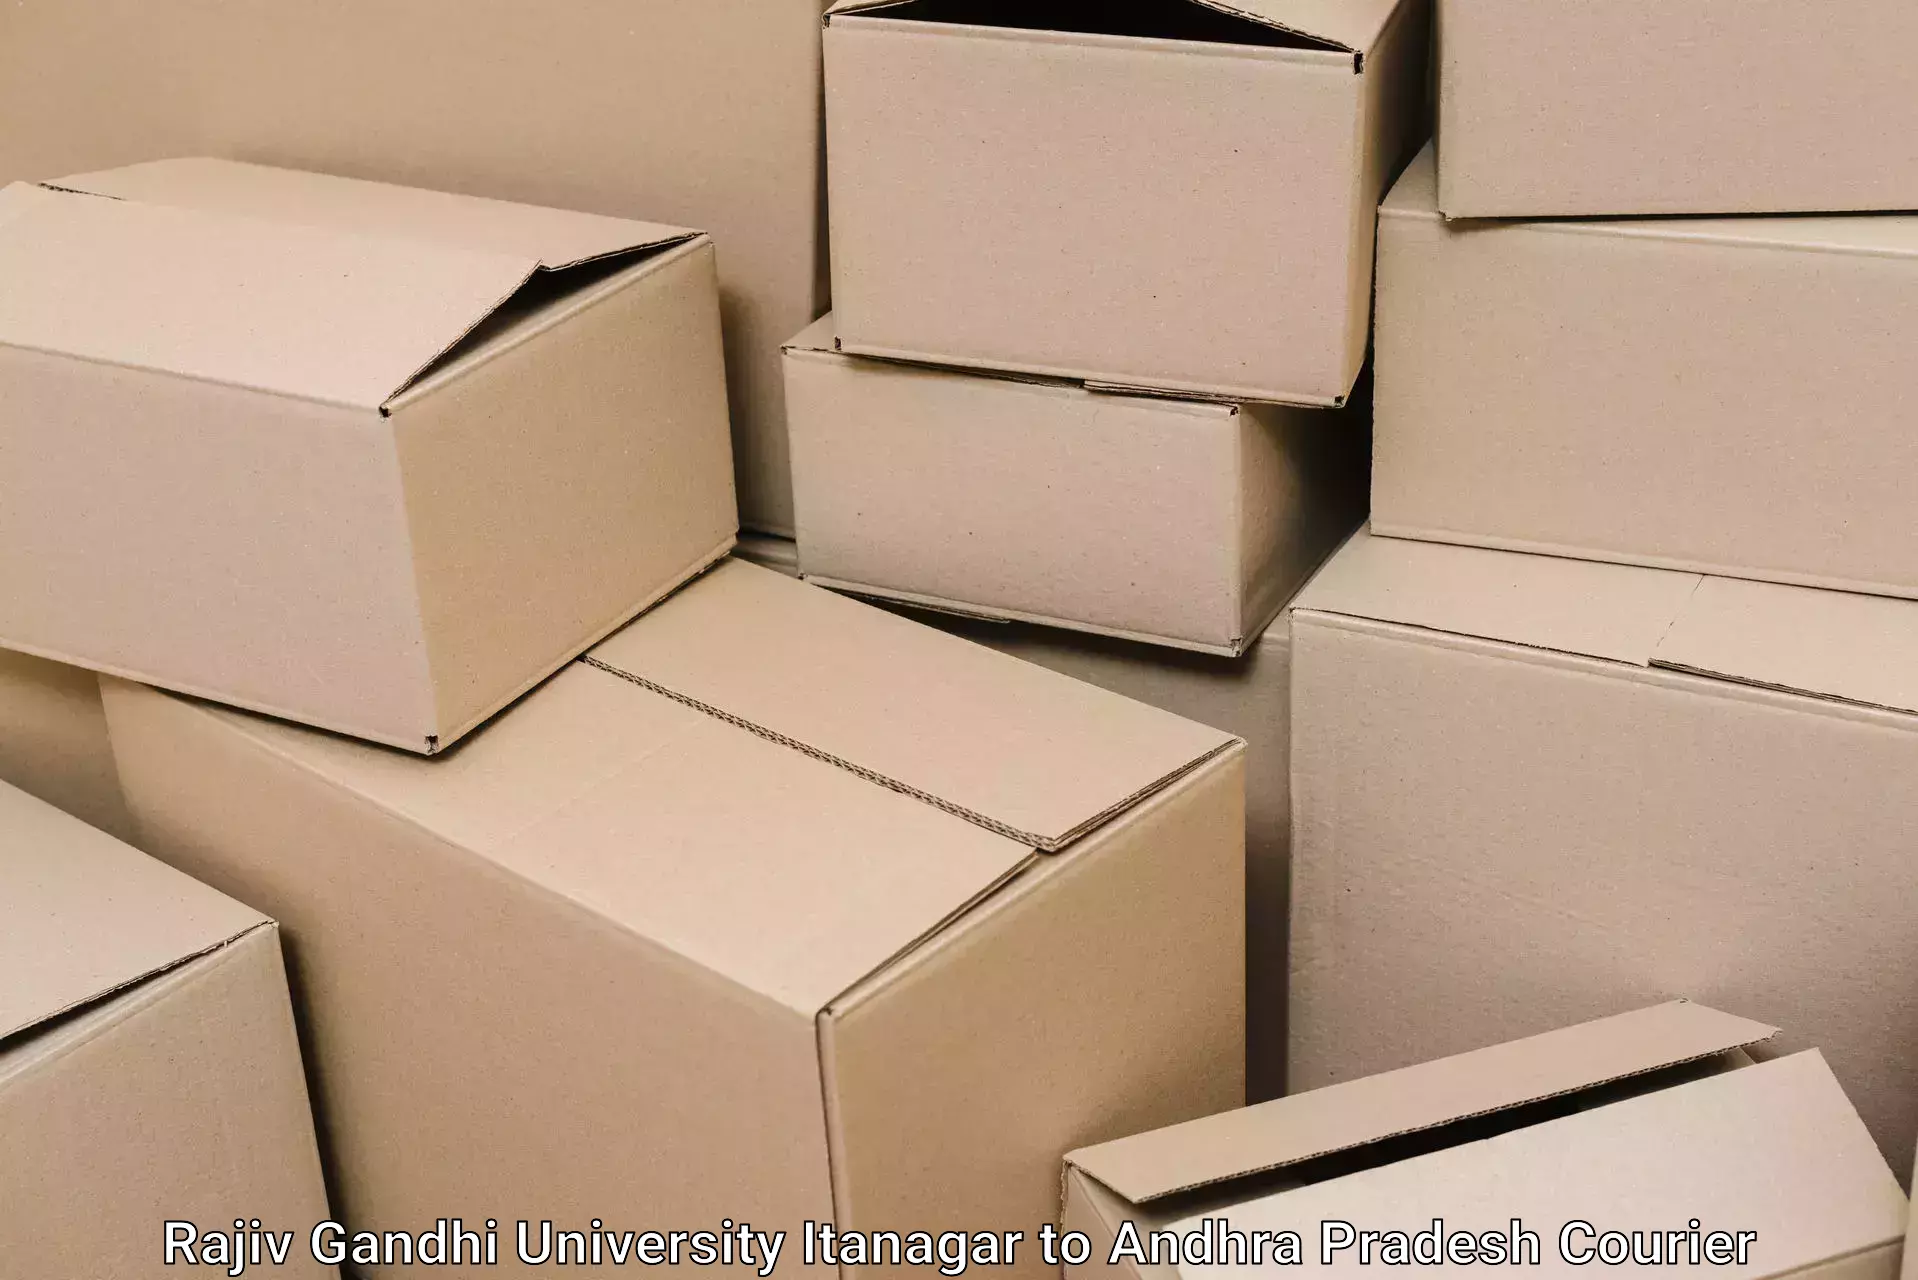 Safe household movers Rajiv Gandhi University Itanagar to Pamuru